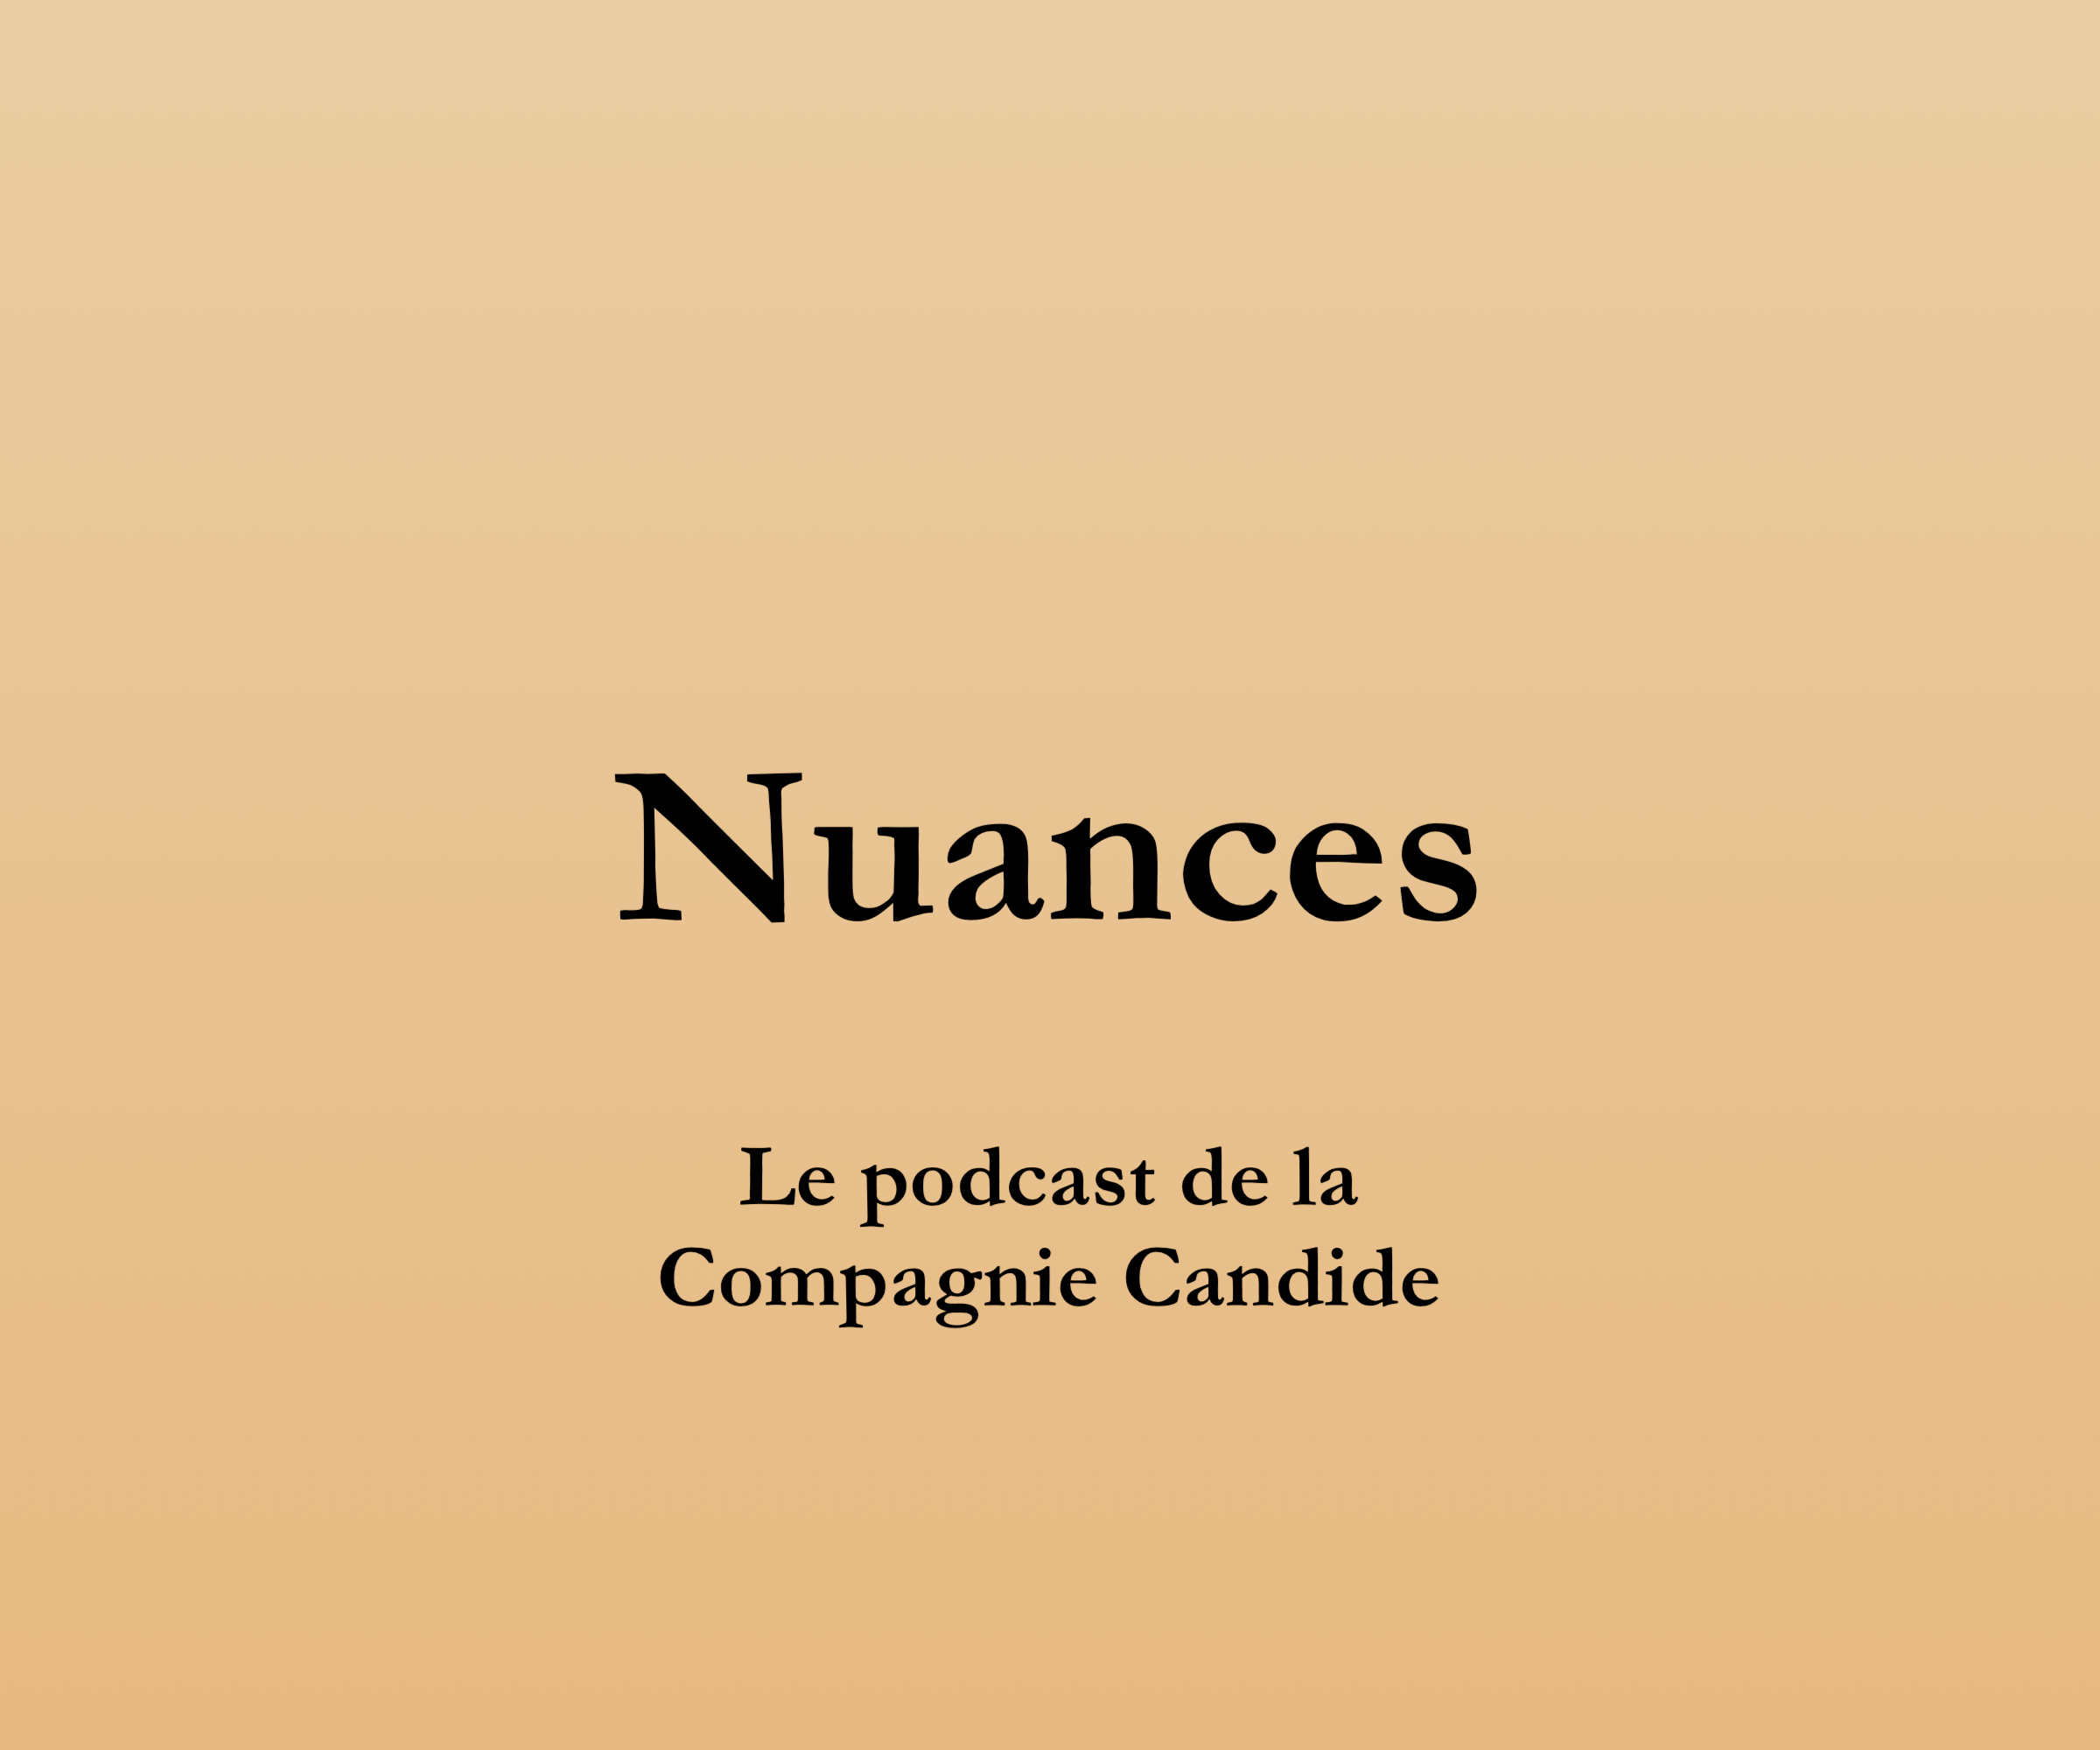 Un podcast pour découvrir les spectacles de la compagnie Candide par le son.